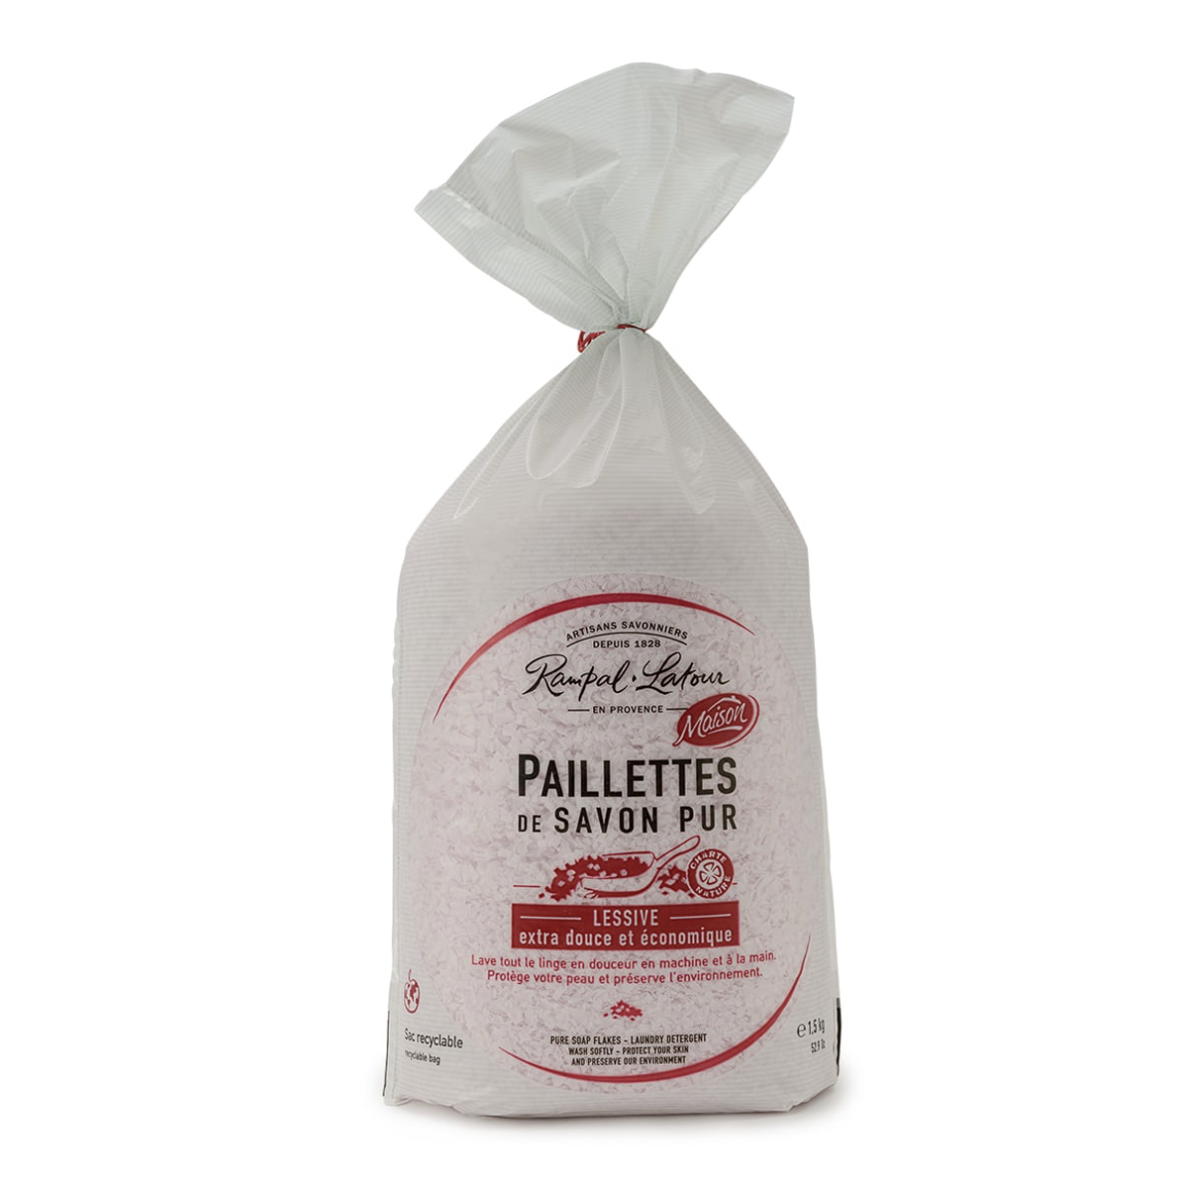 Pure soap flakes for laundry Rose de Grasse 1.5kg – Rampal Latour